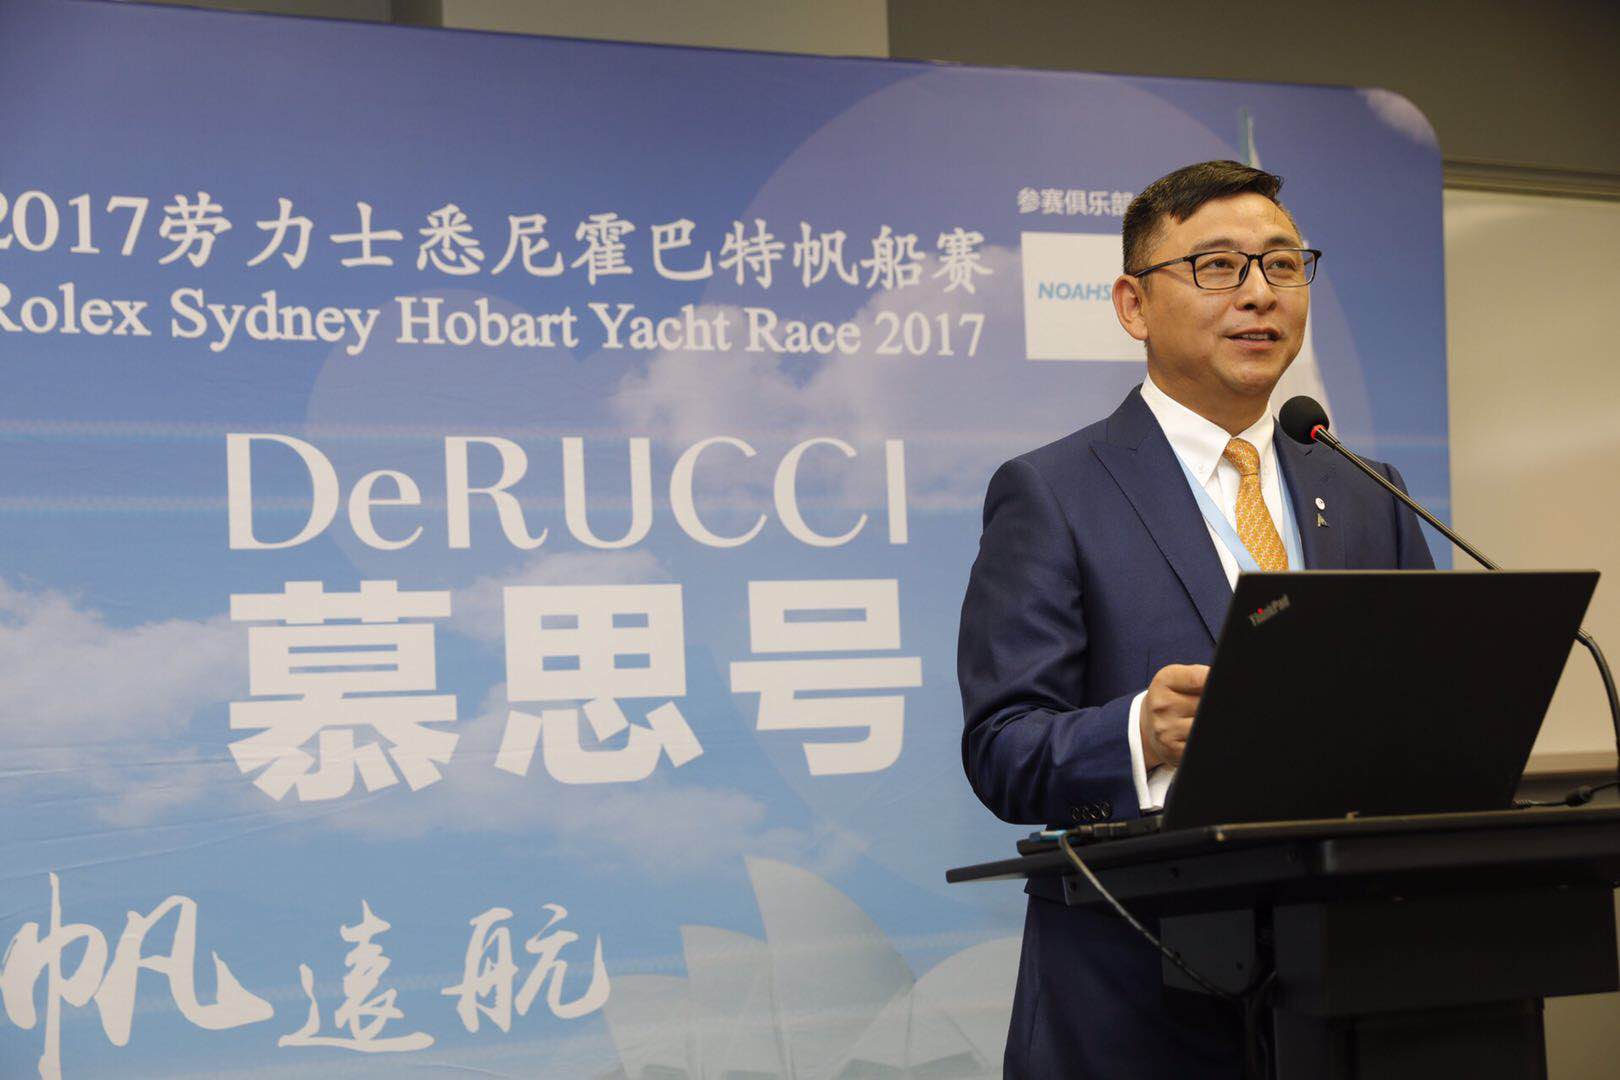 5新闻图 simon Zhang DeRUCCI慕思号首次出战悉尼霍巴特帆船赛，扬帆远洋 全球瞩目